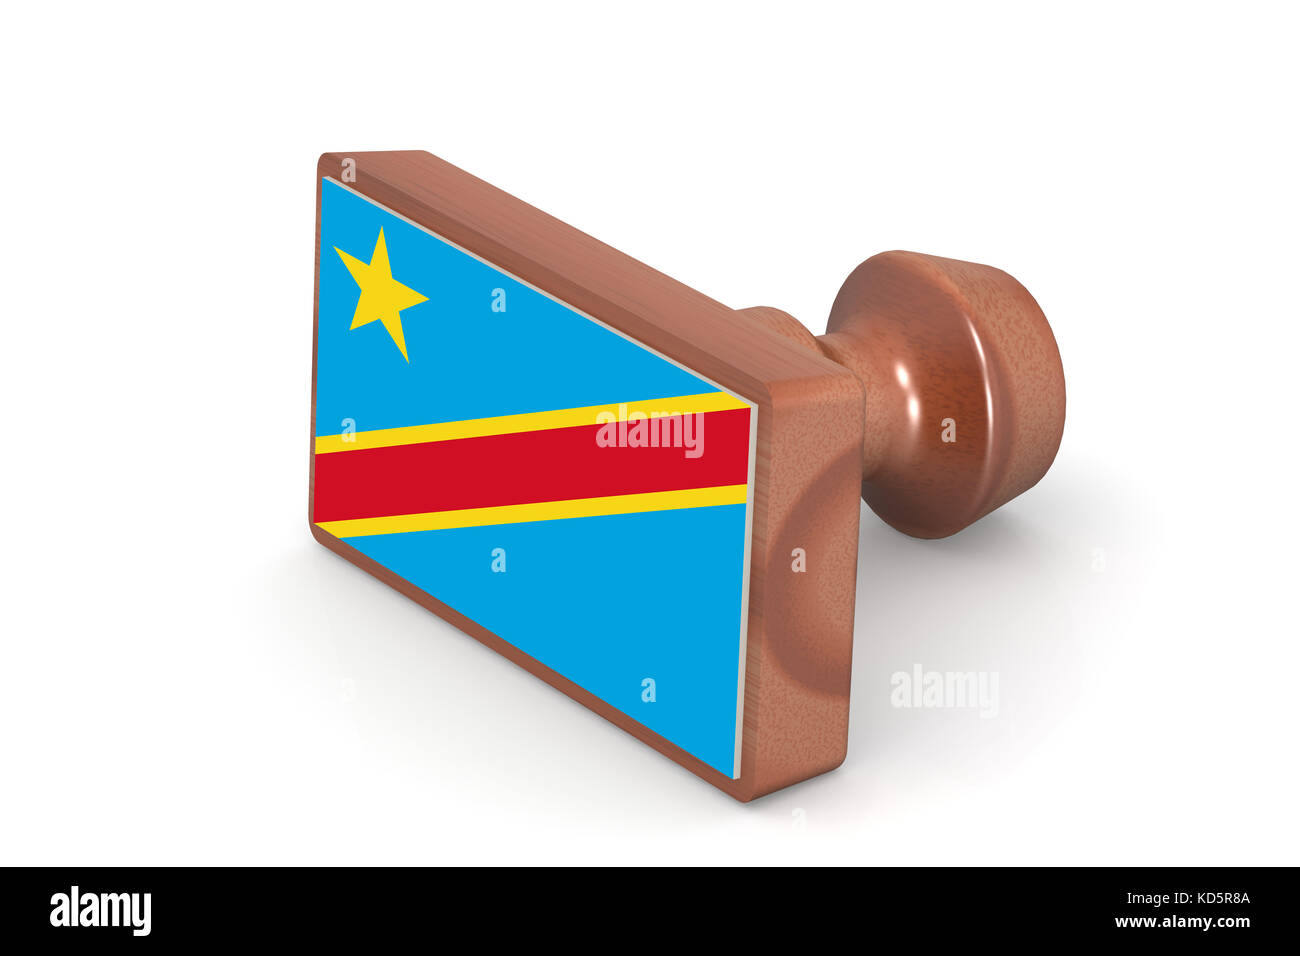 Holz Stempel mit der Demokratischen Republik Kongo Flagge Bild mit Hi-res gerenderte Grafiken, die für jede beliebige Grafik Design verwendet werden könnten. Stockfoto